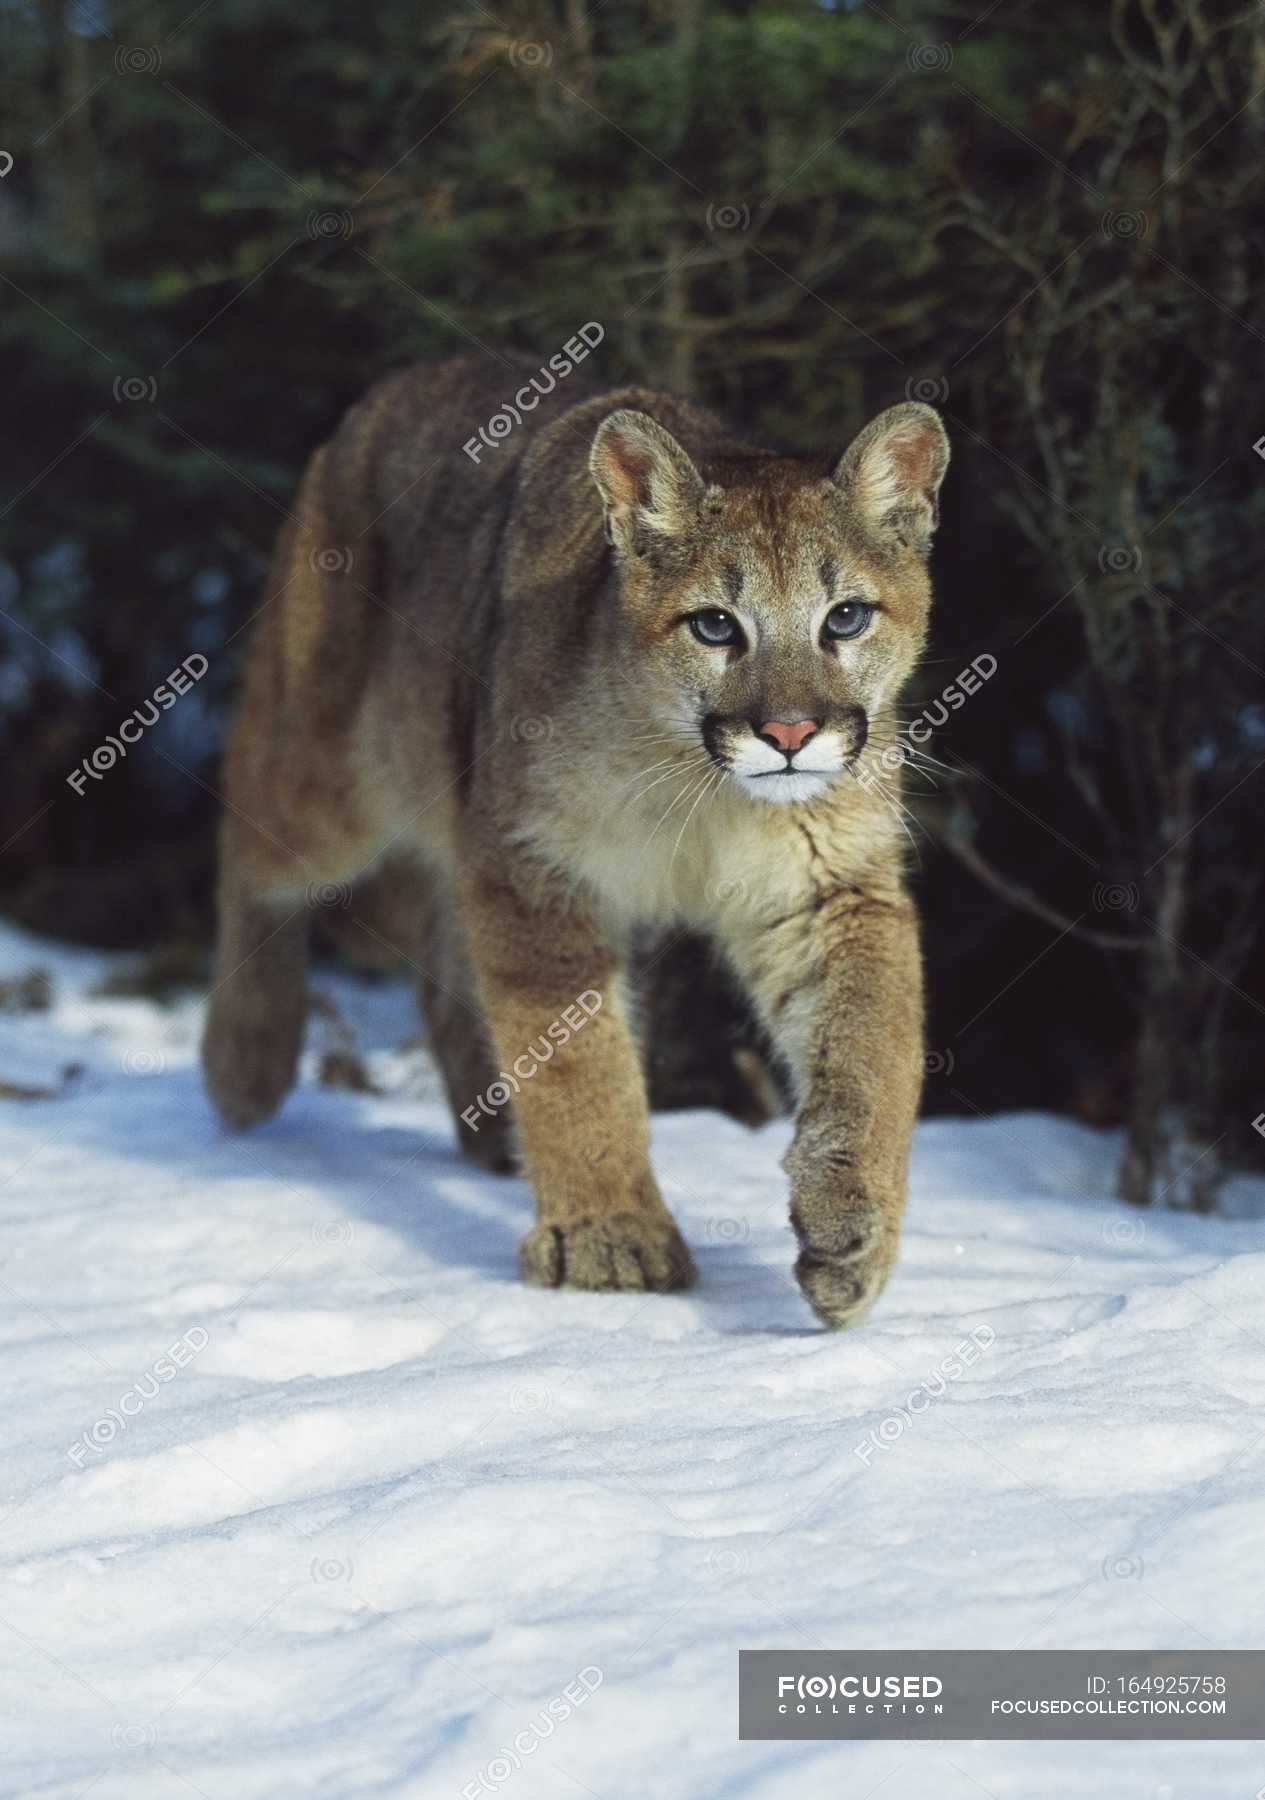 snow mountain lion